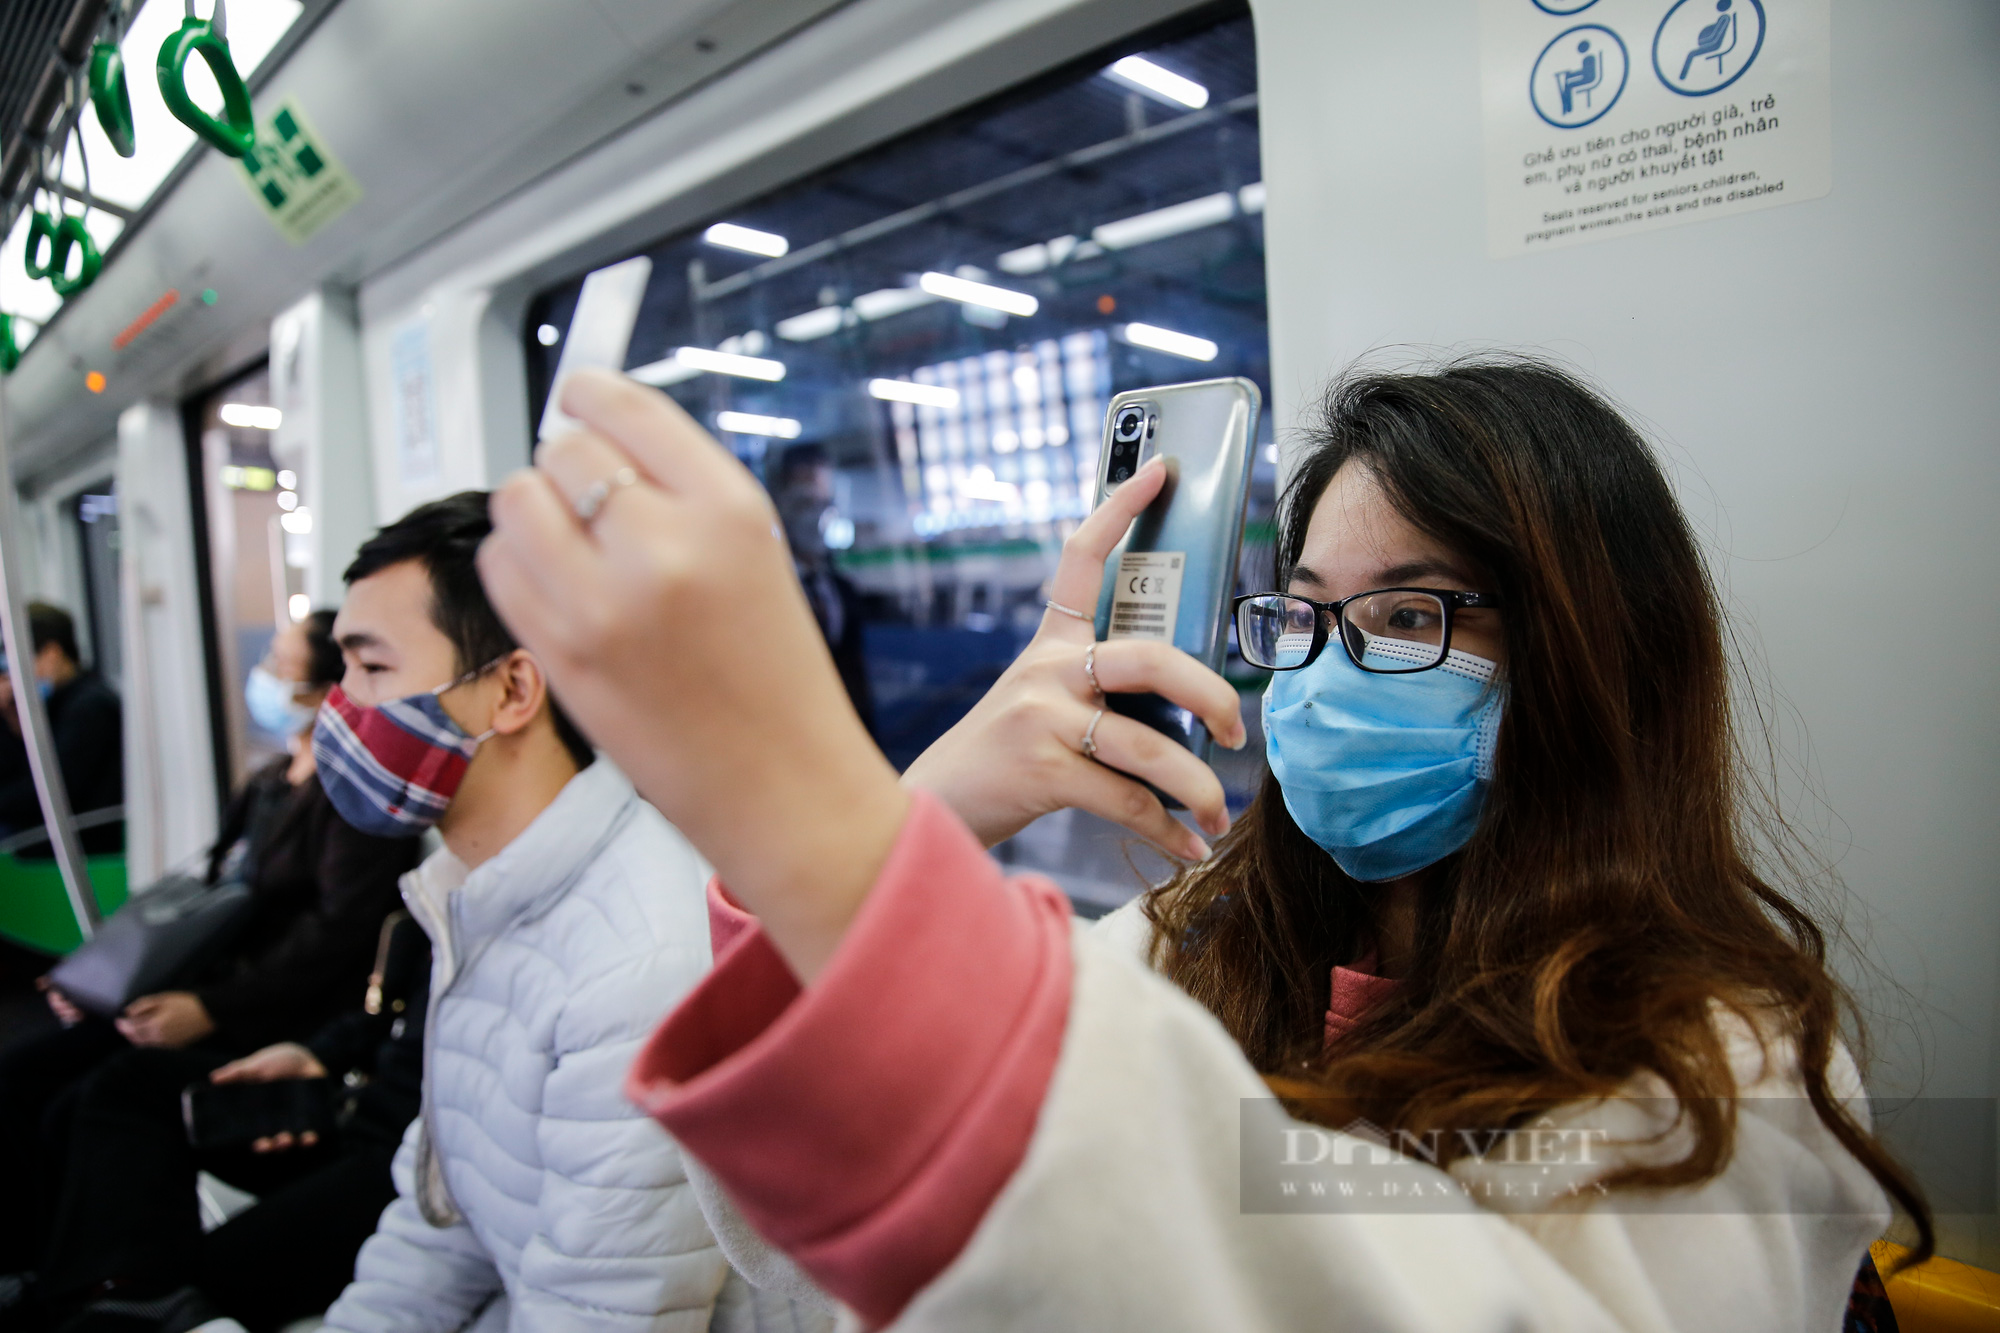 Ga tàu Cát Linh - Hà Đông bất ngờ vắng vẻ, giới trẻ Hà Nội rủ nhau đến chụp ảnh check-in  - Ảnh 4.